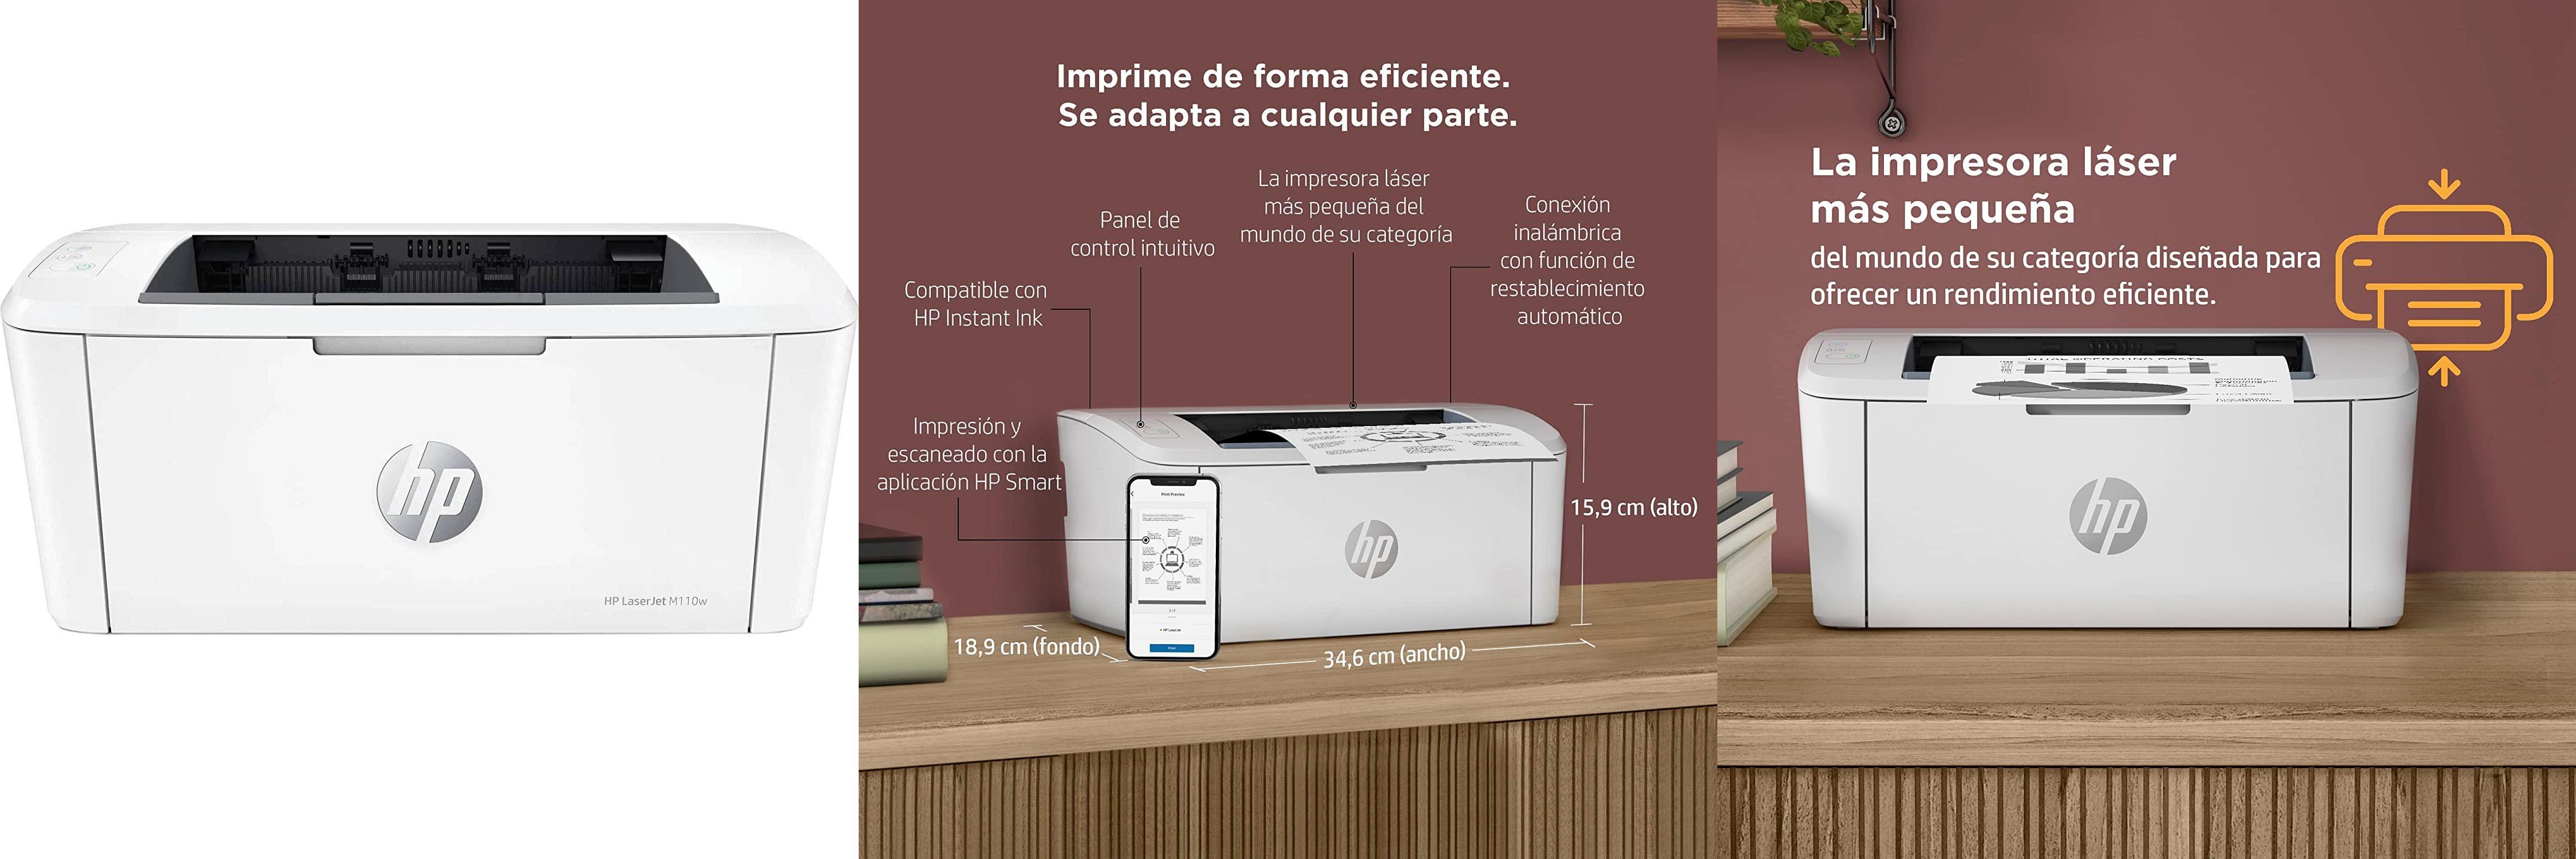 HP LaserJet M110w 7MD66F: Impresora láser monocromo de alto rendimiento para oficinas